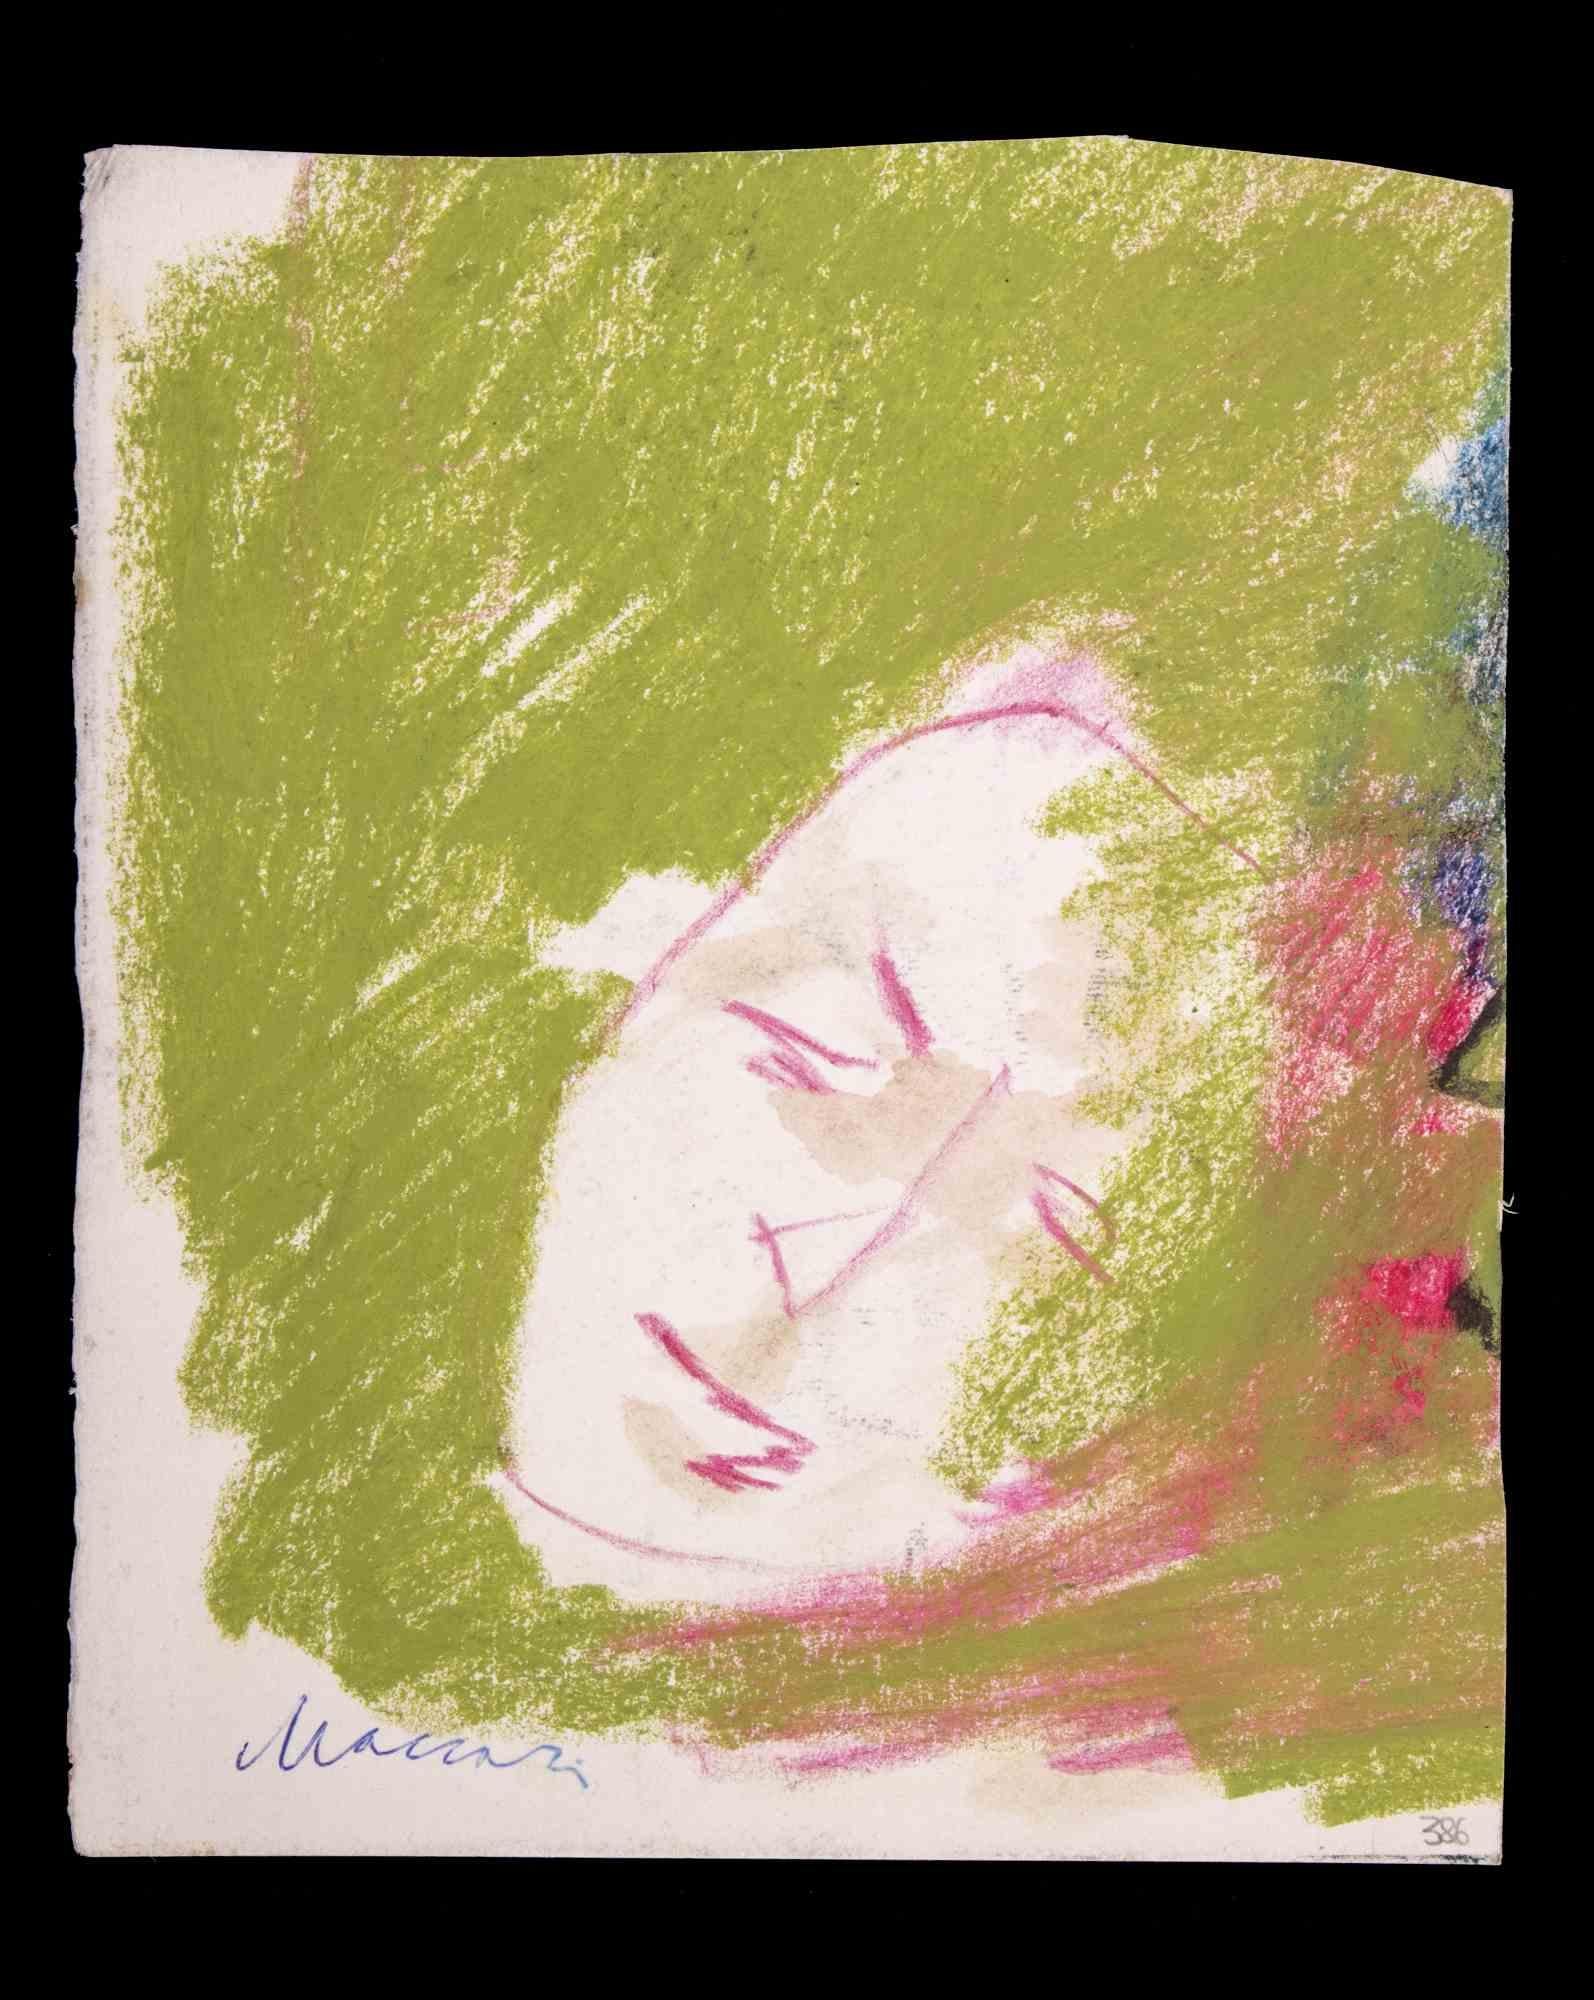 Das Gesicht ist eine Pastellzeichnung von Mino Maccari  (1924-1989) in den 1980er Jahren.

Handsigniert am unteren Rand.

Guter Zustand auf einer kleinen Pappe.

Mino Maccari (Siena, 1924-Rom, 16. Juni 1989) war ein italienischer Schriftsteller,